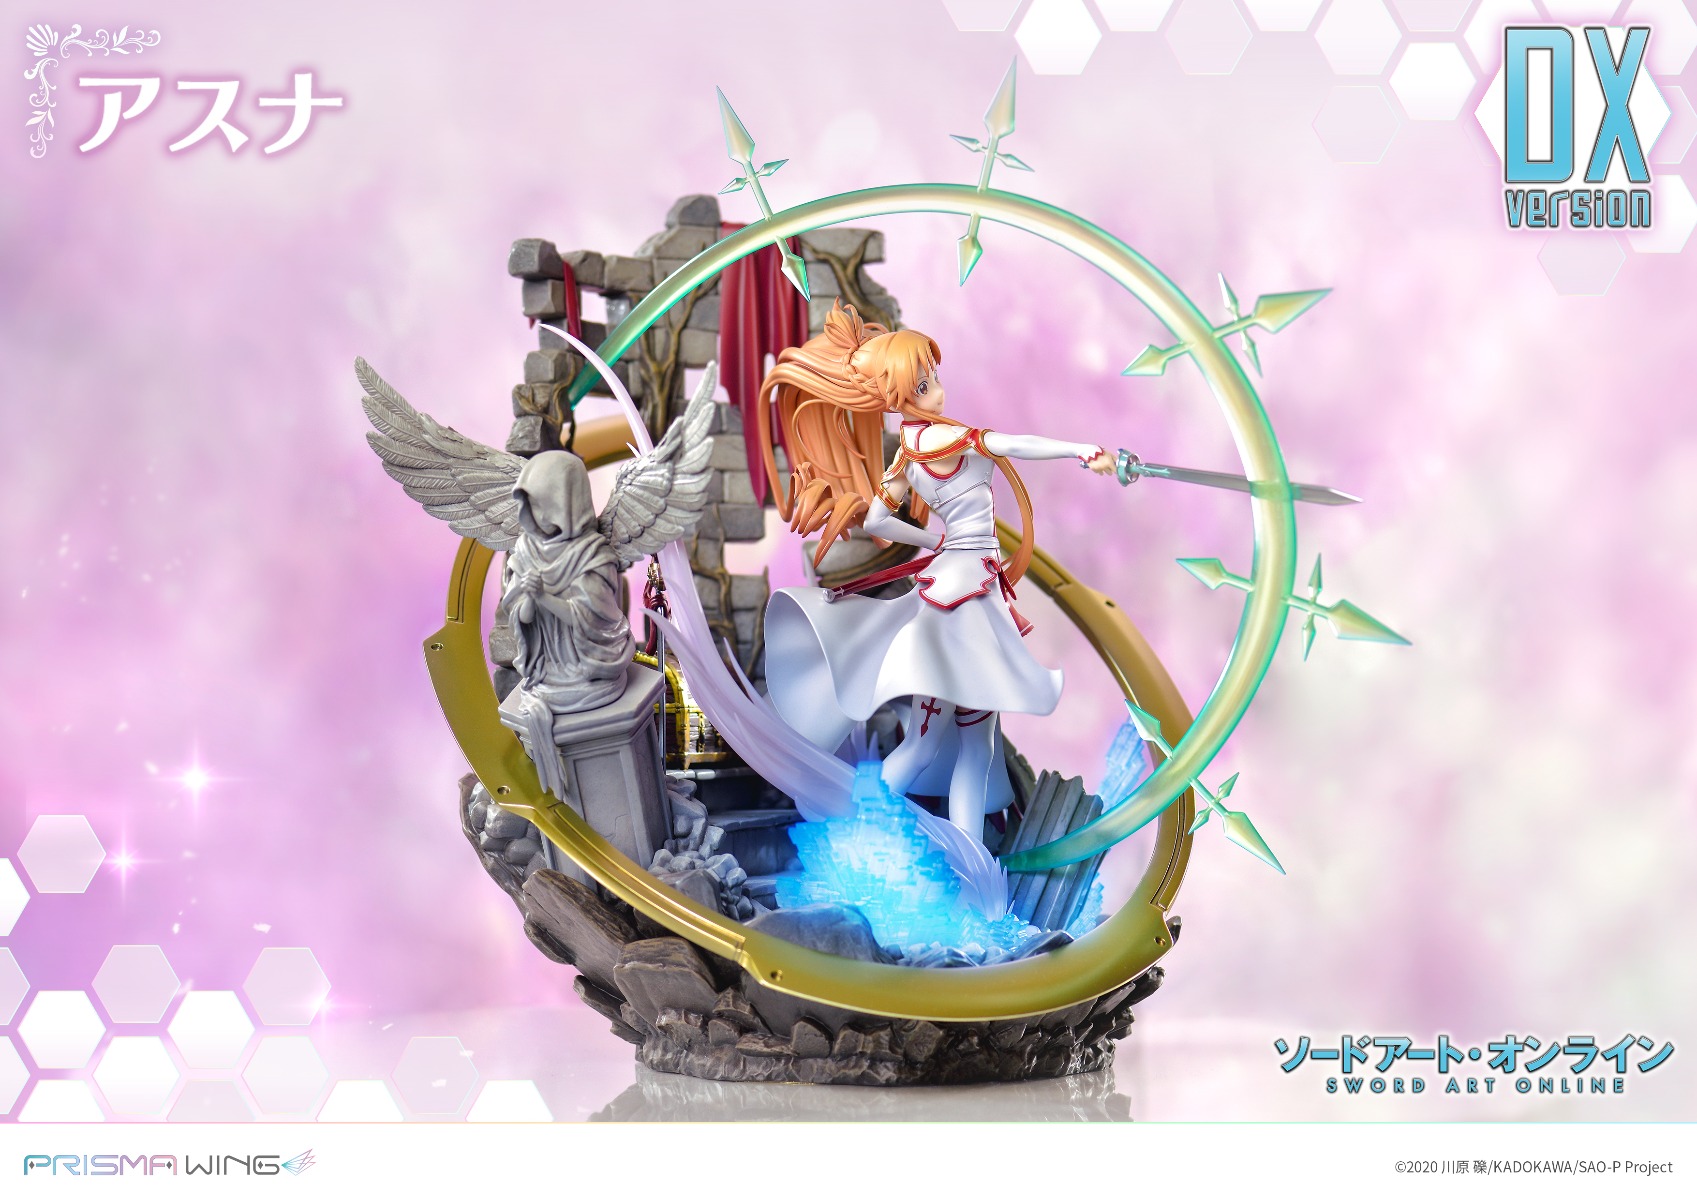 The Flash Asuna 1/7 Scale Figure Statue Sword Art Online SAO PRIME 1 STUDIO